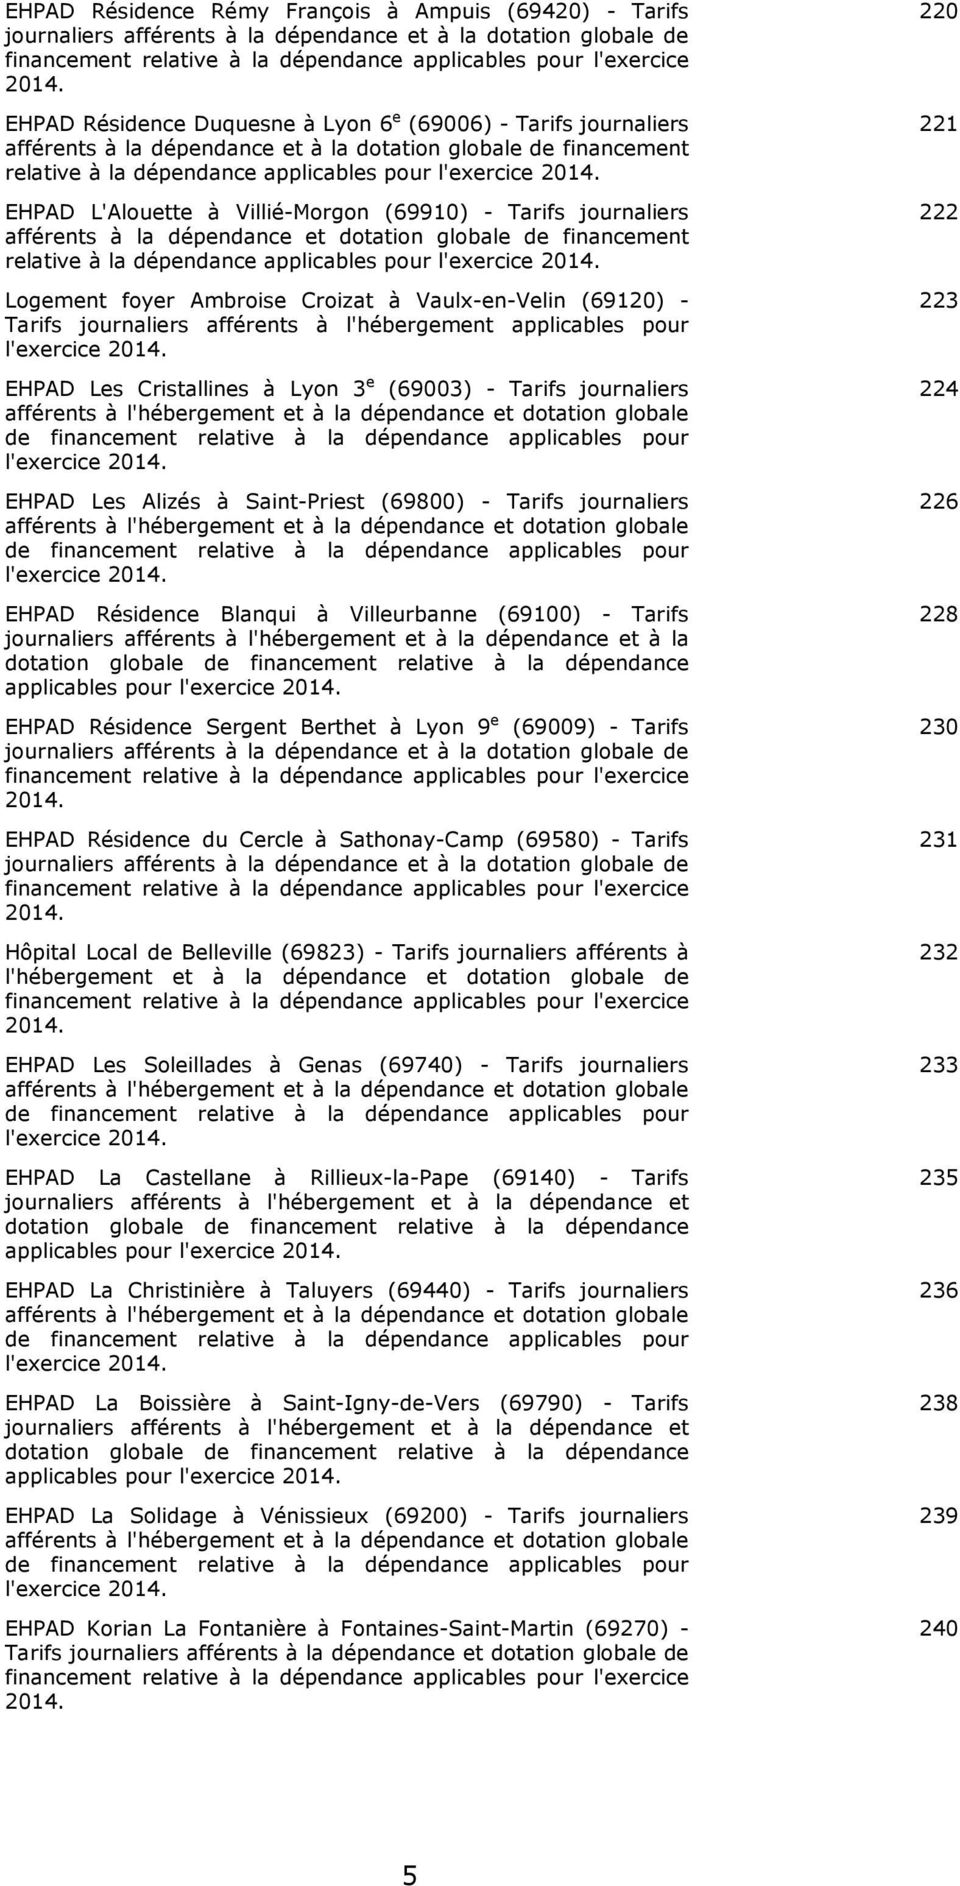 EHPAD L'Alouette à Villié-Morgon (69910) - Tarifs journaliers afférents à la dépendance et dotation globale de financement relative à la dépendance applicables pour l'exercice 2014.